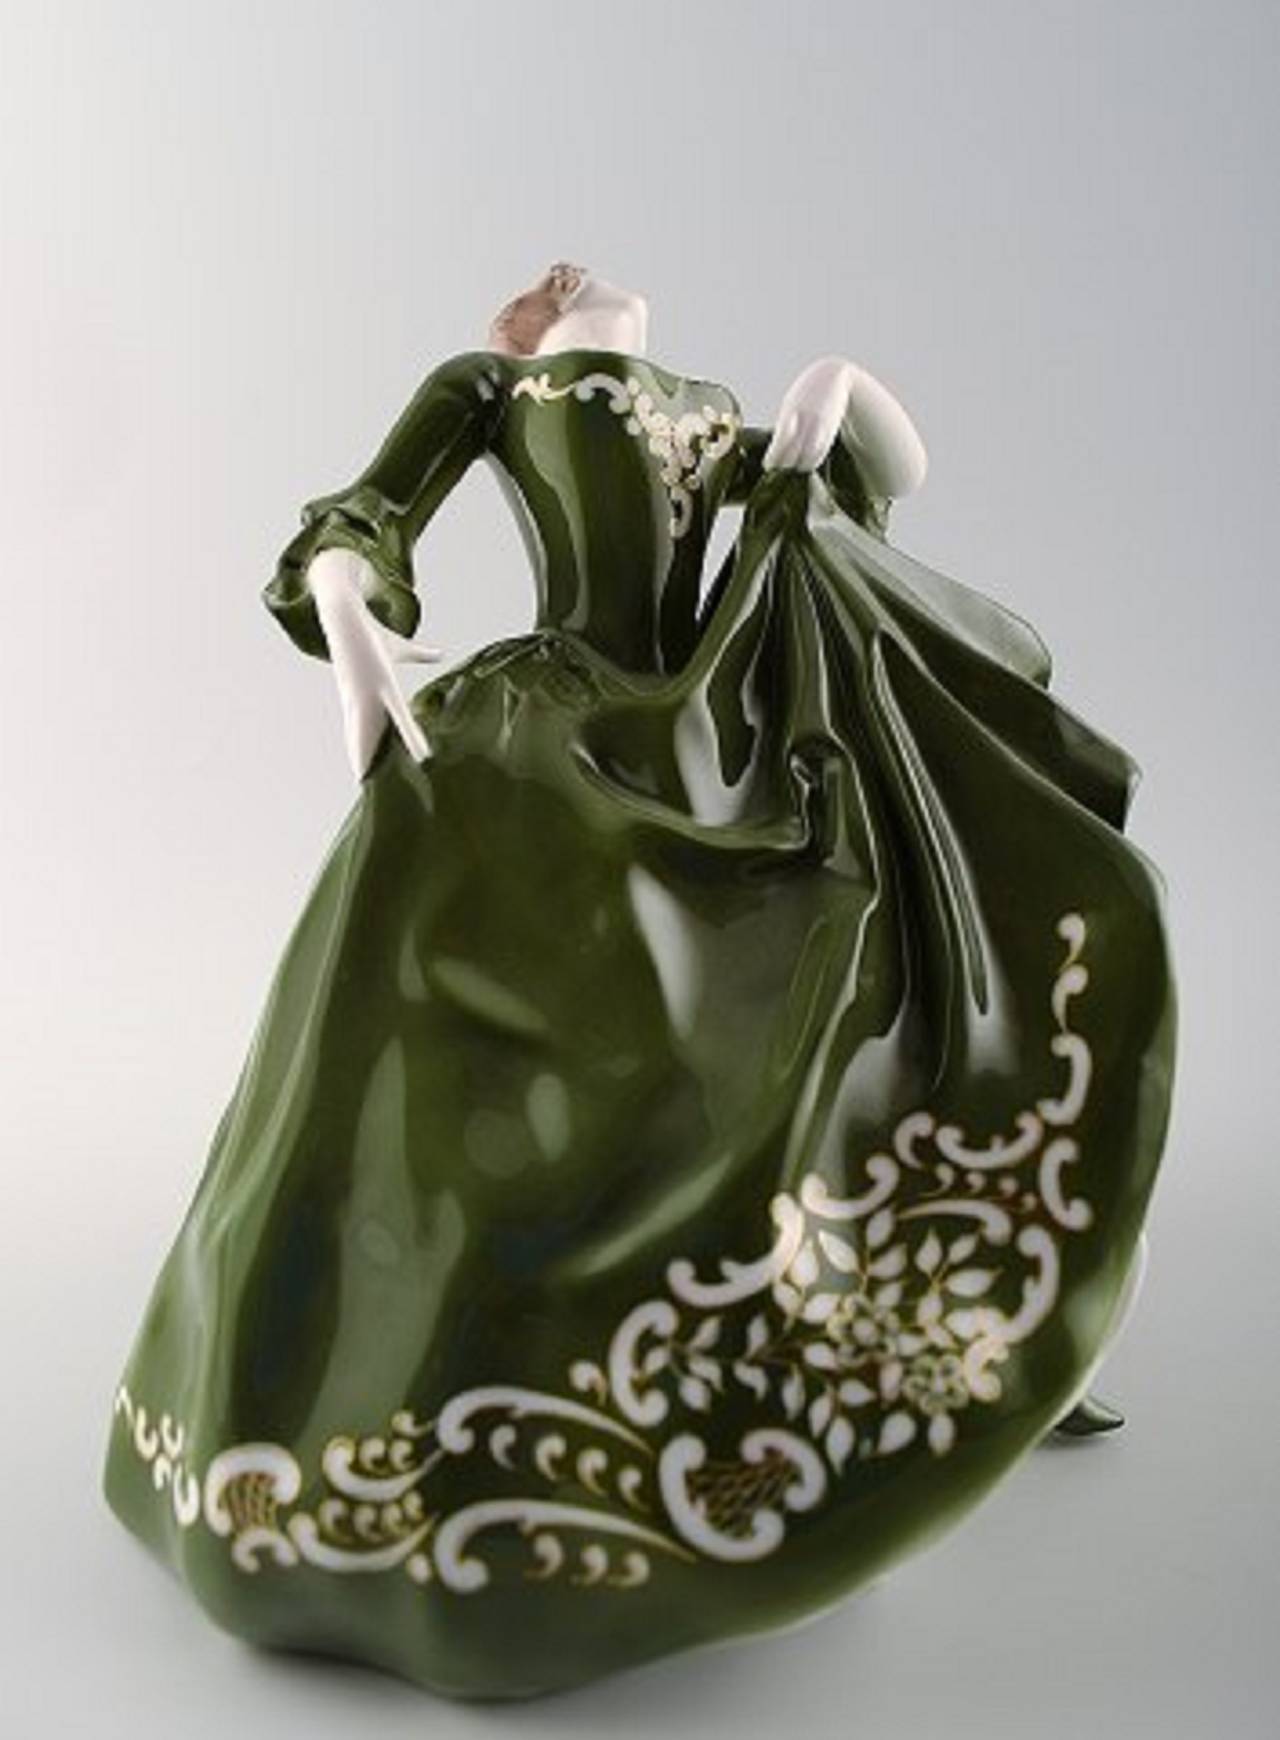 Großes Art Deco Rosenthal, Erna von Langenmantel.
Porzellanfigur einer tanzenden Frau.
Anfang des 20. Jahrhunderts.
Maße: 28 cm, hoch und 22 cm im Durchmesser.
In perfektem Zustand. Markiert.